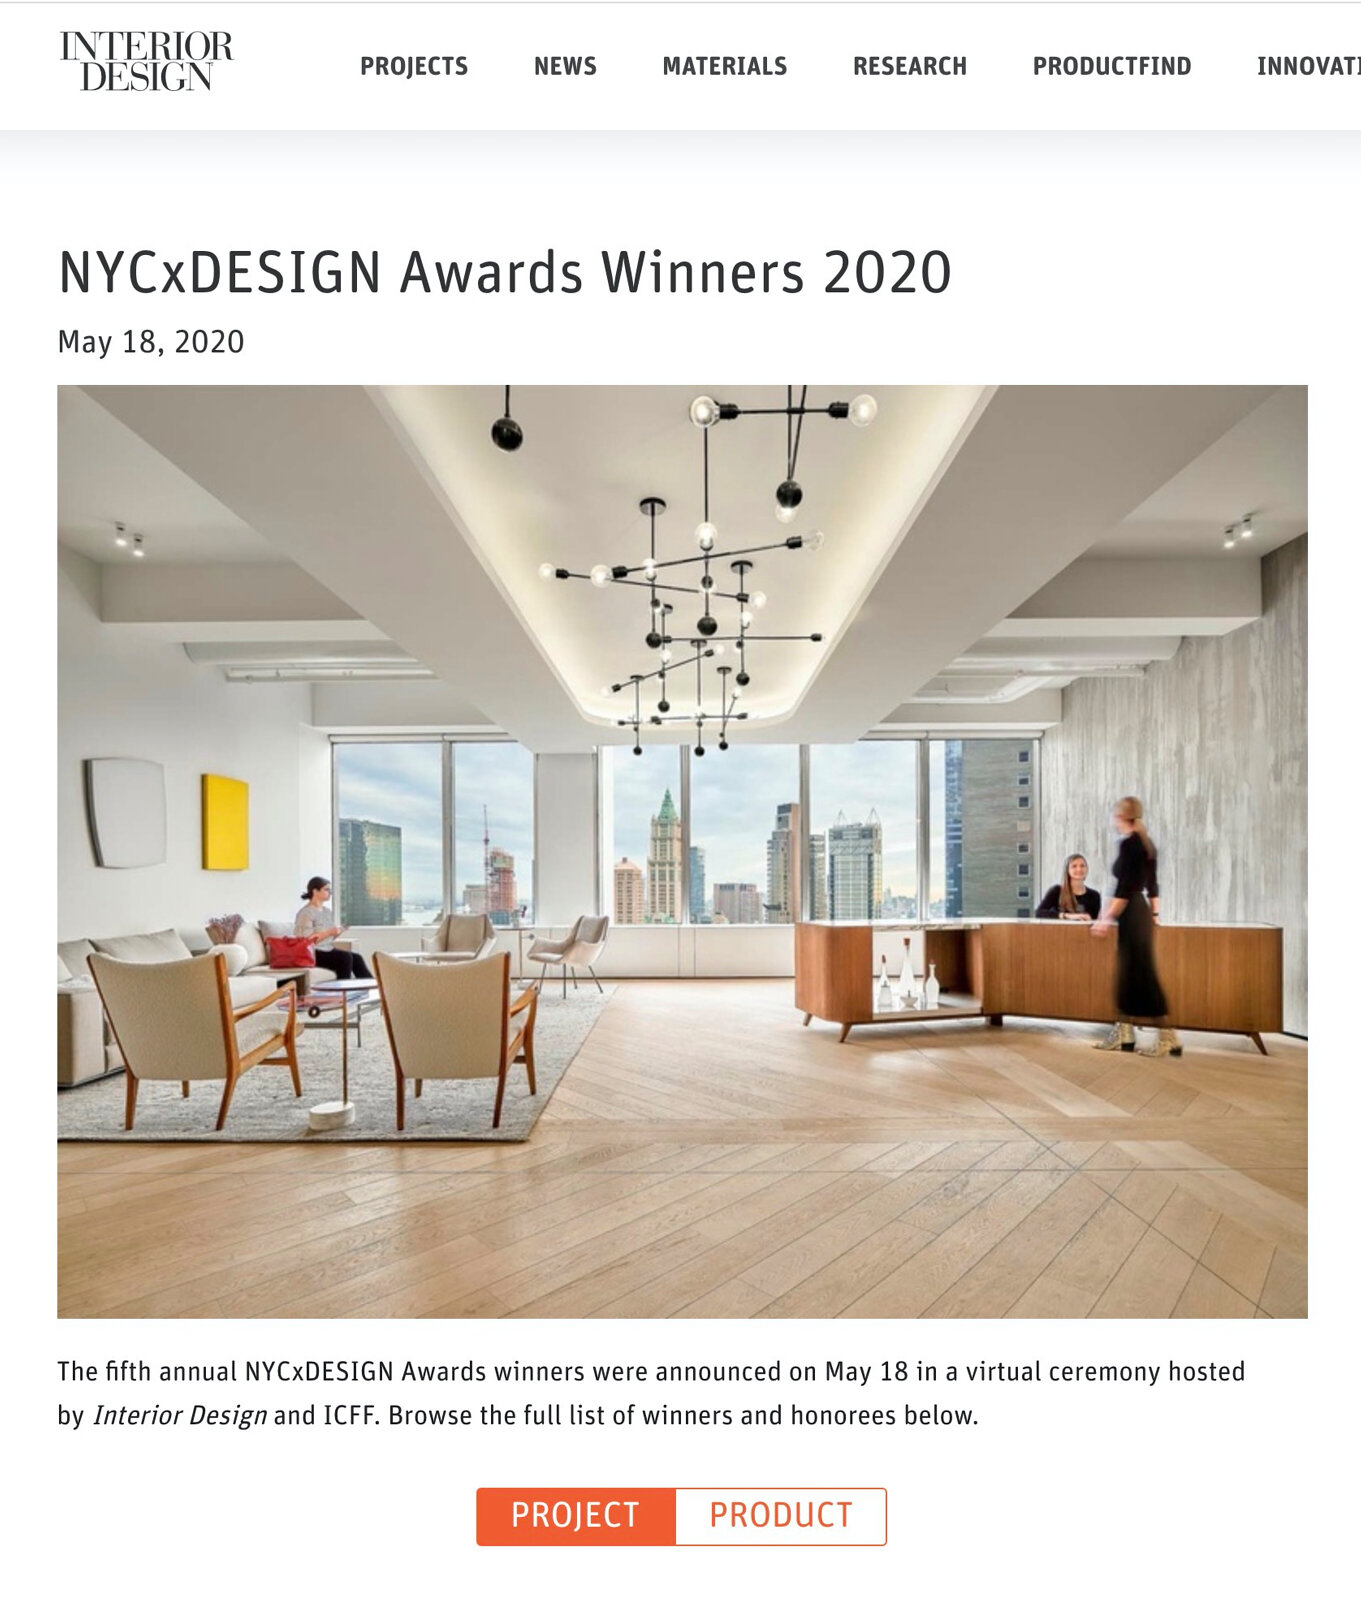  Winner of NYCXDESIGN 2020 